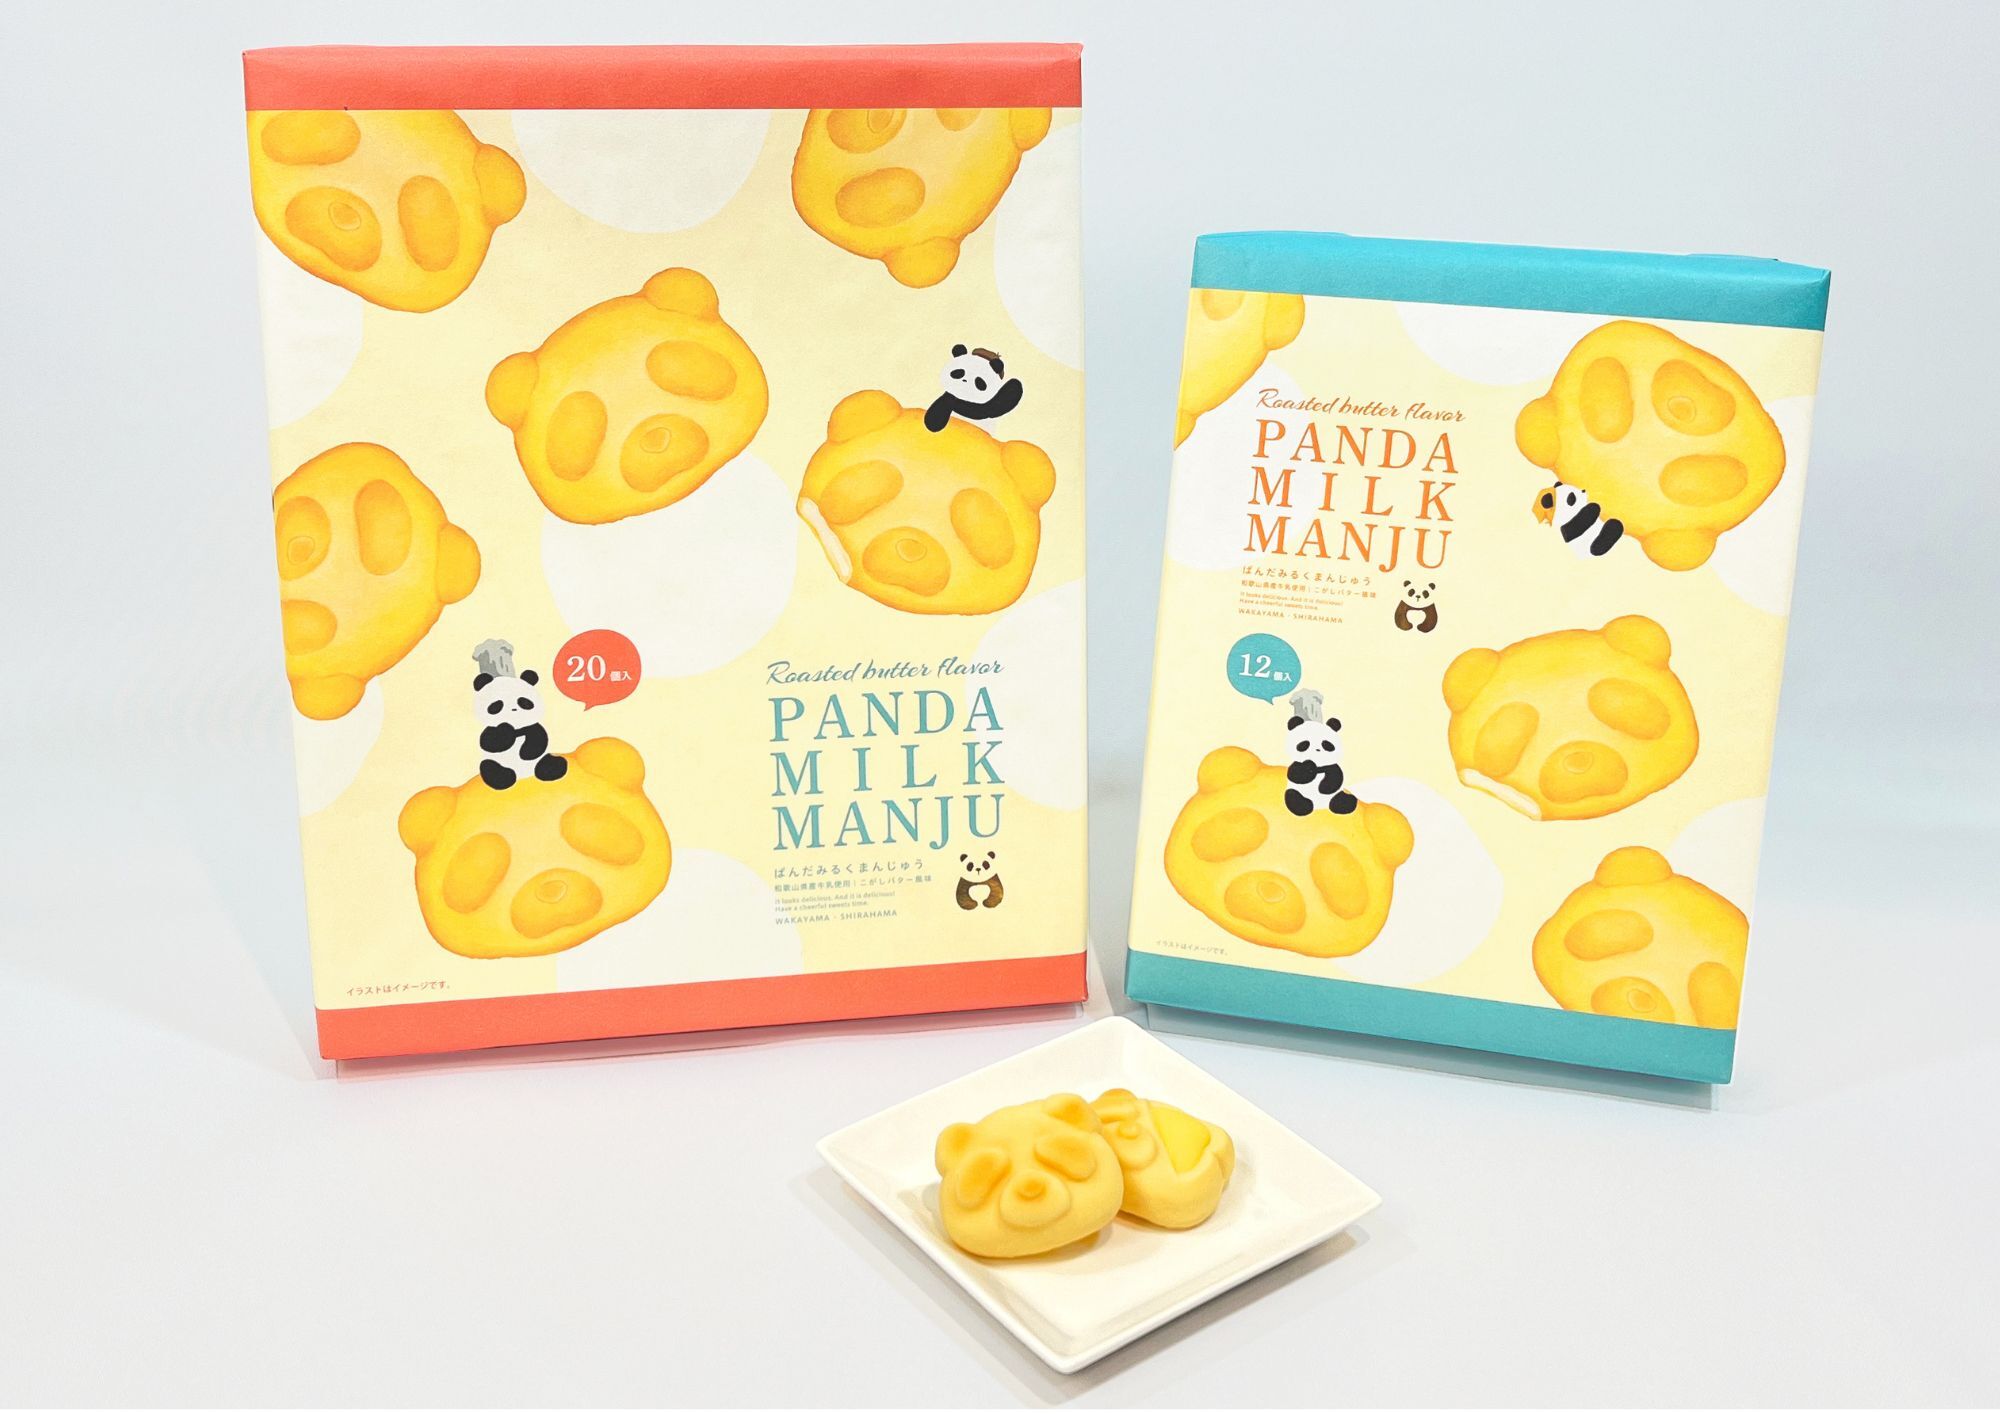 パンダ型のかわいい和歌山土産が新登場！
ぱんだみるくまんじゅう こがしバター風味 7月6日発売